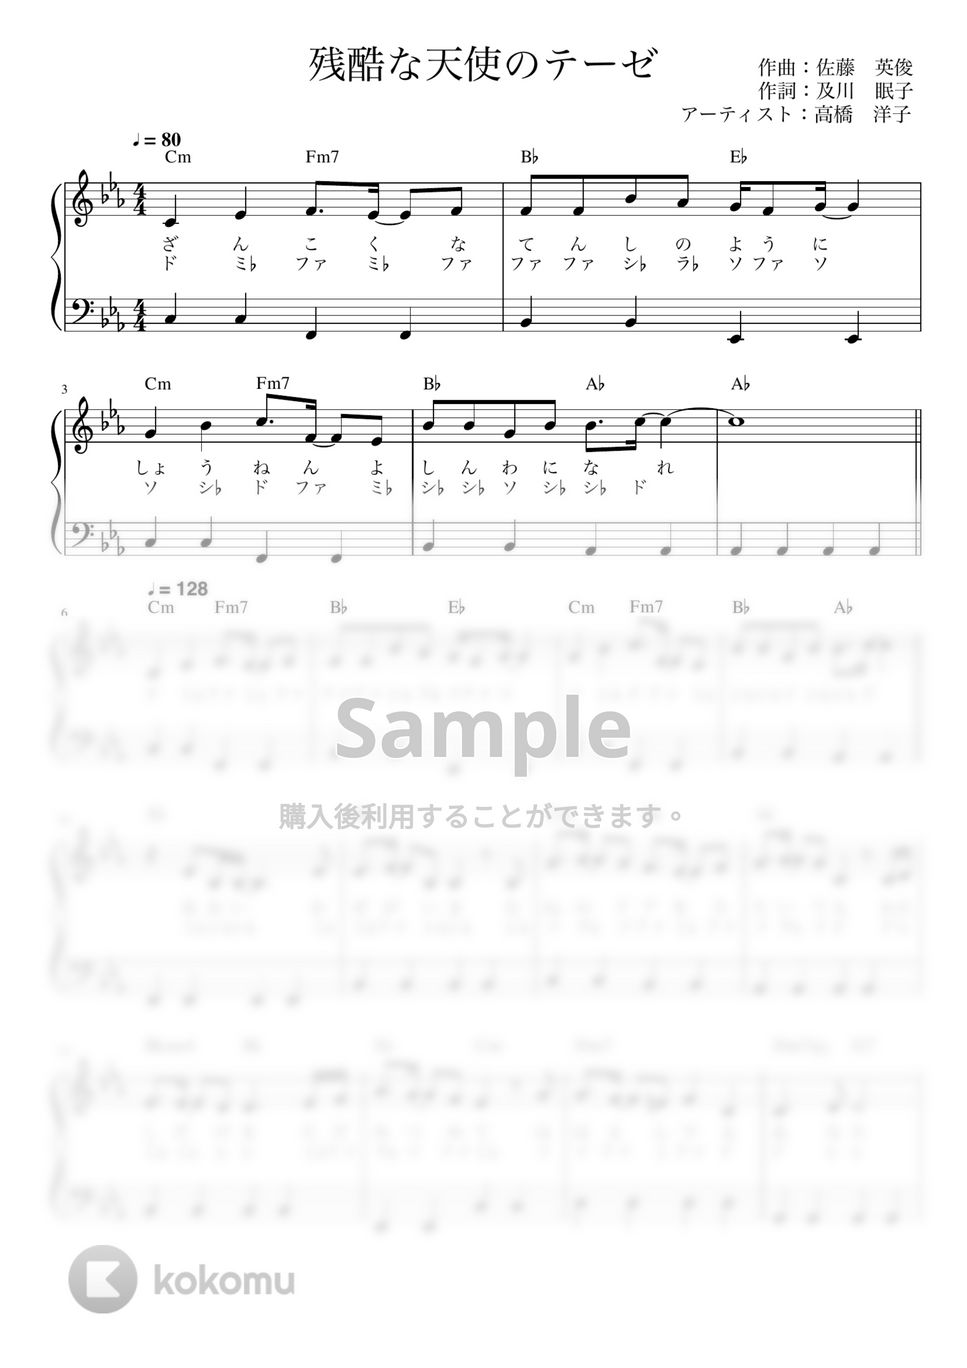 高橋洋子 - 残酷な天使のテーゼ (かんたん 歌詞付き ドレミ付き 初心者) by piano.tokyo